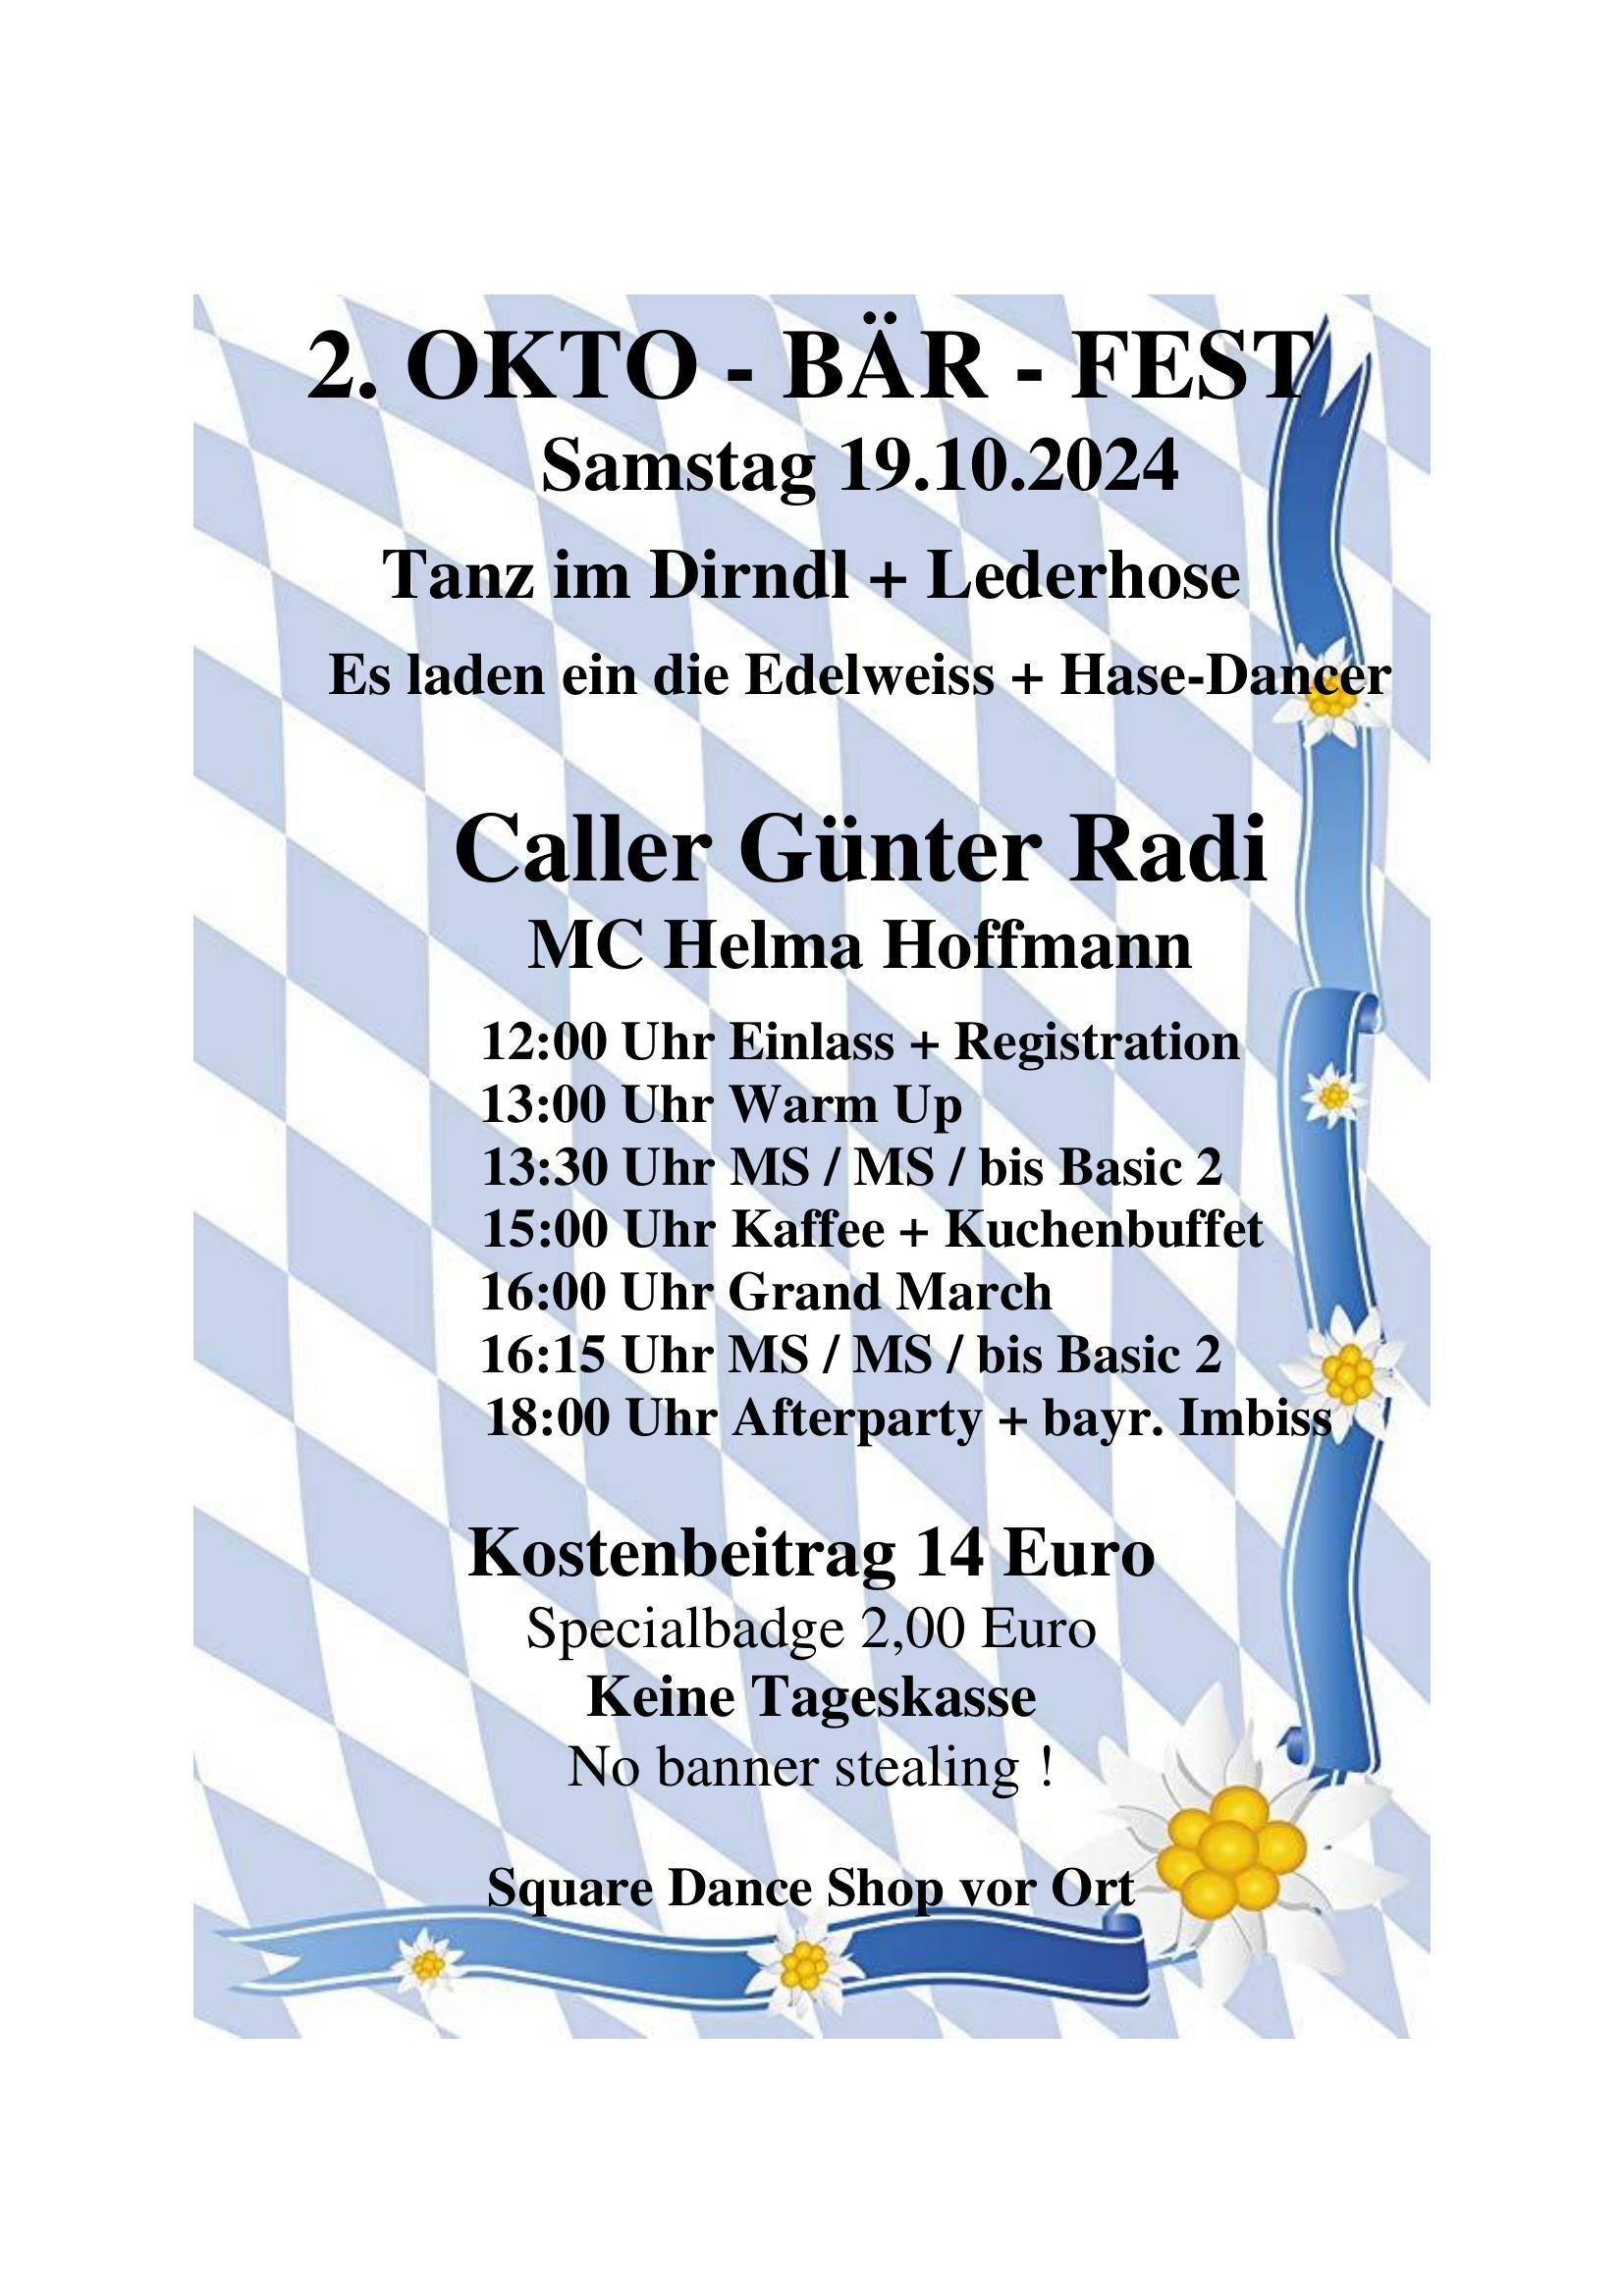 2. Okto-Bär-Fest